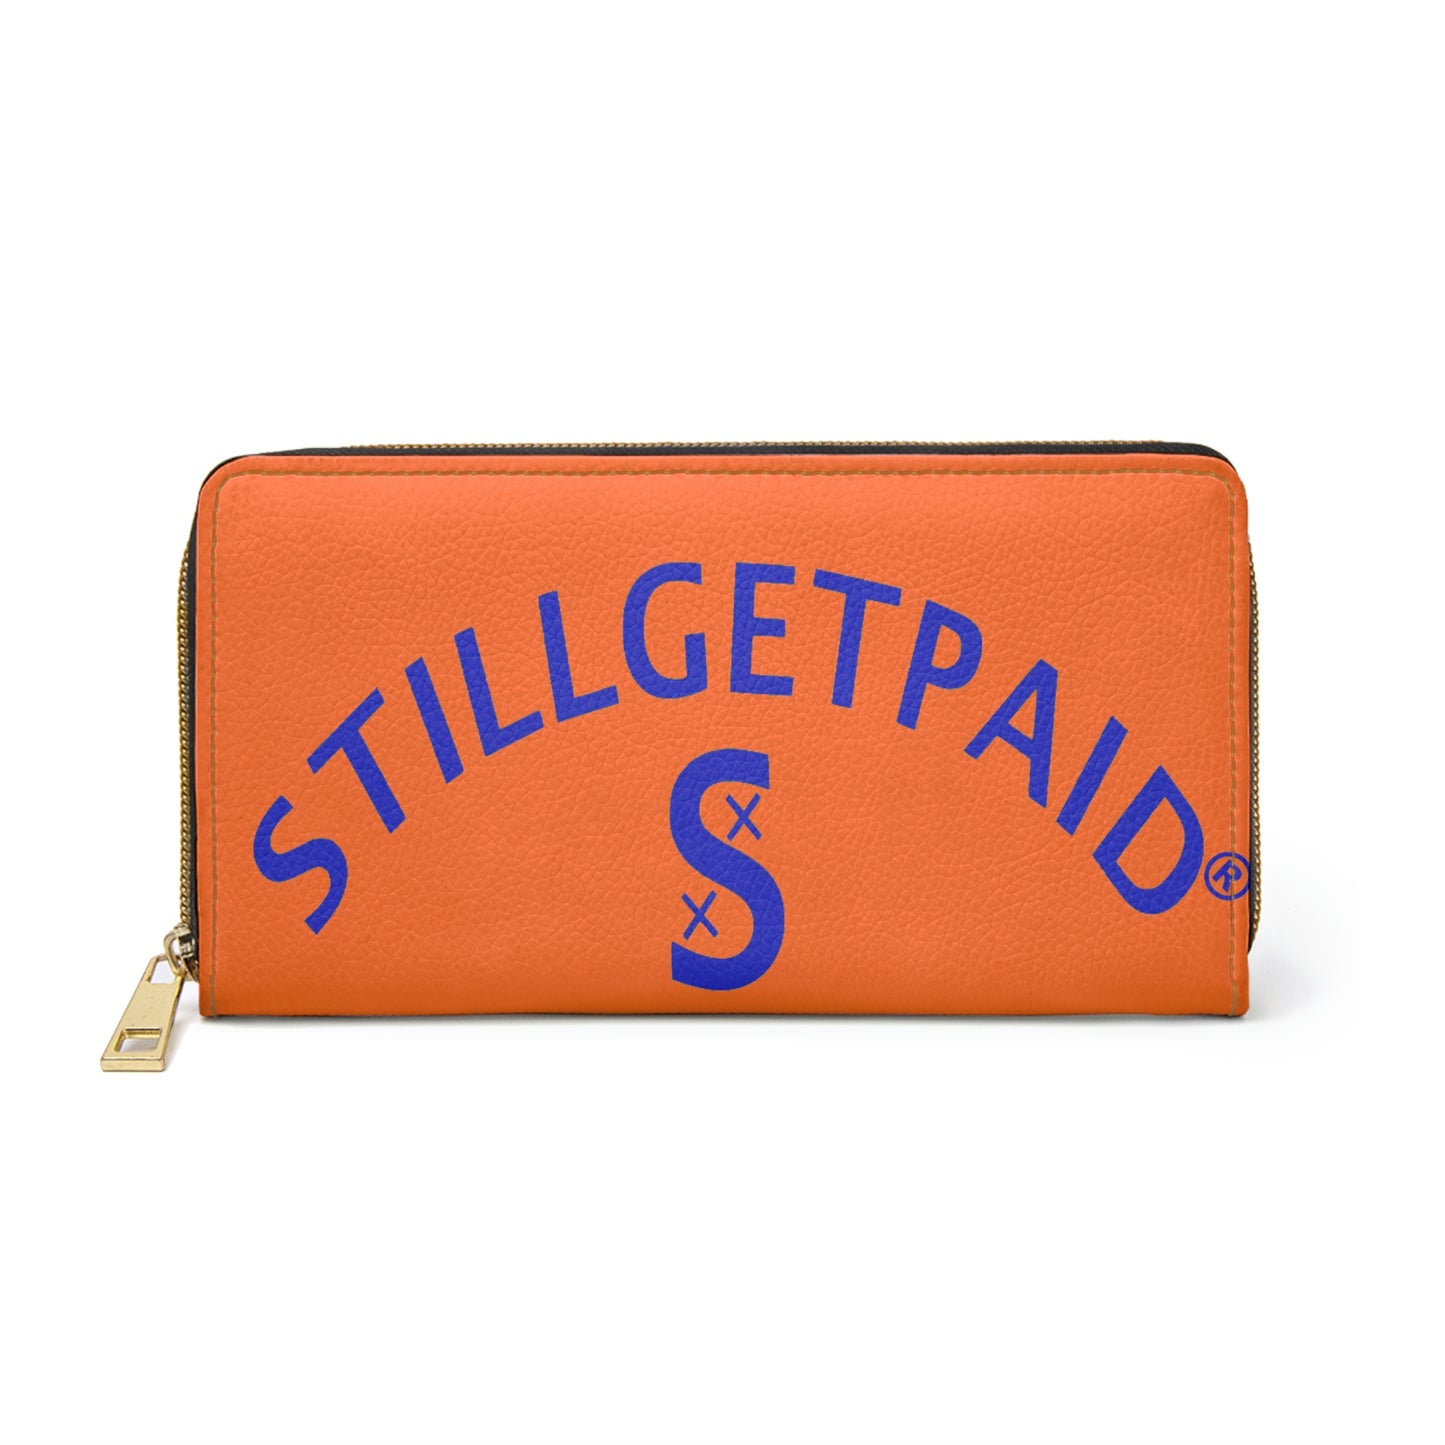 STILLGETPAID APPAREL Zipper Wallet